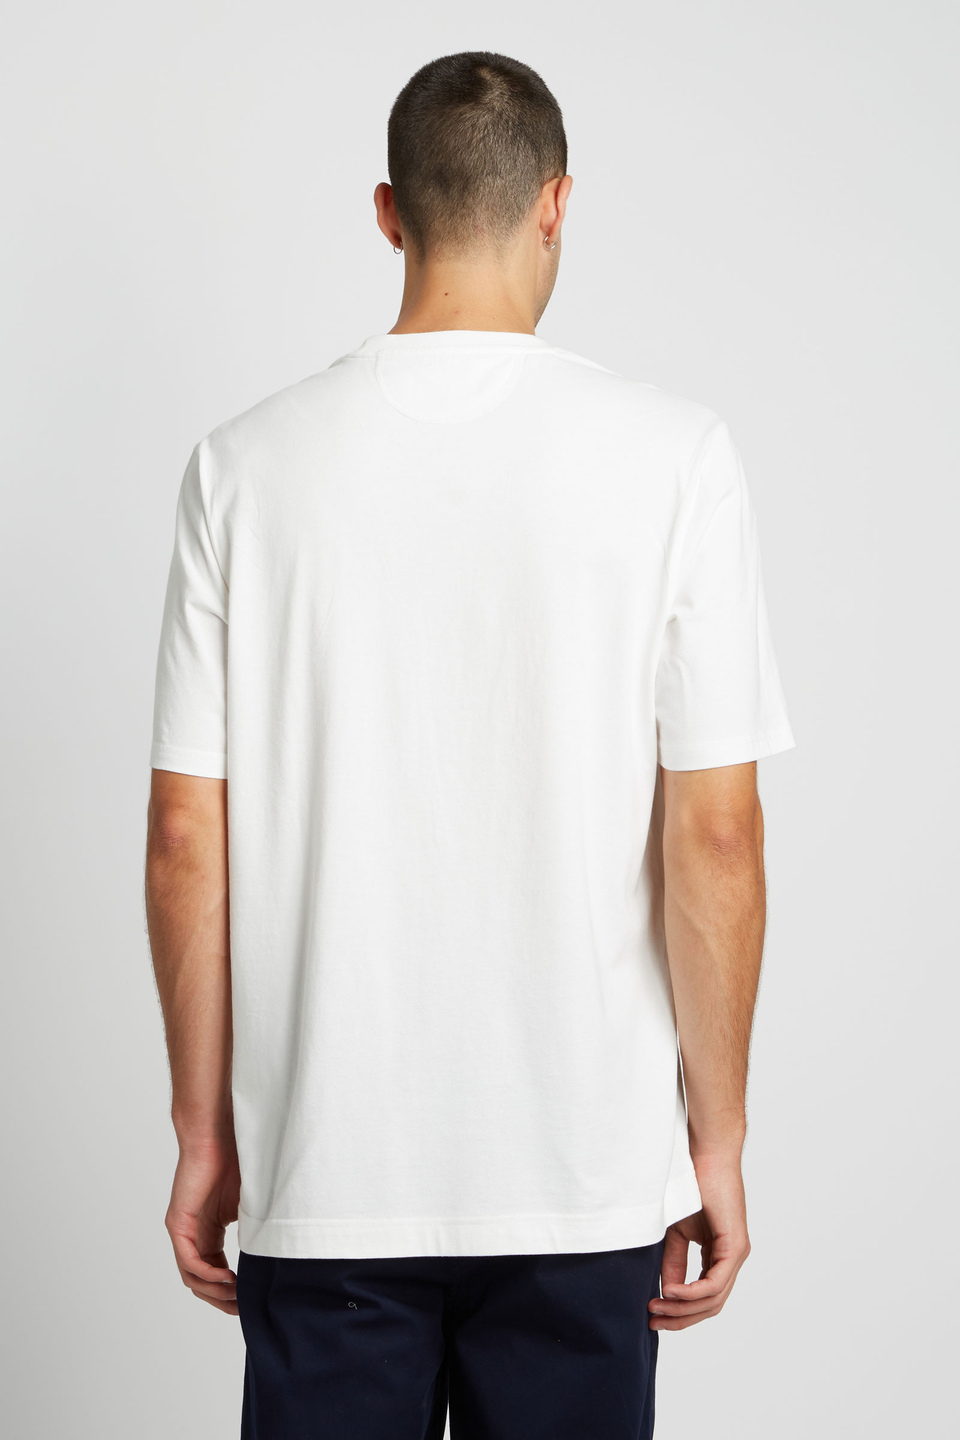 T-shirt homme 100% coton à manches courtes et coupe oversize | La Martina - Official Online Shop